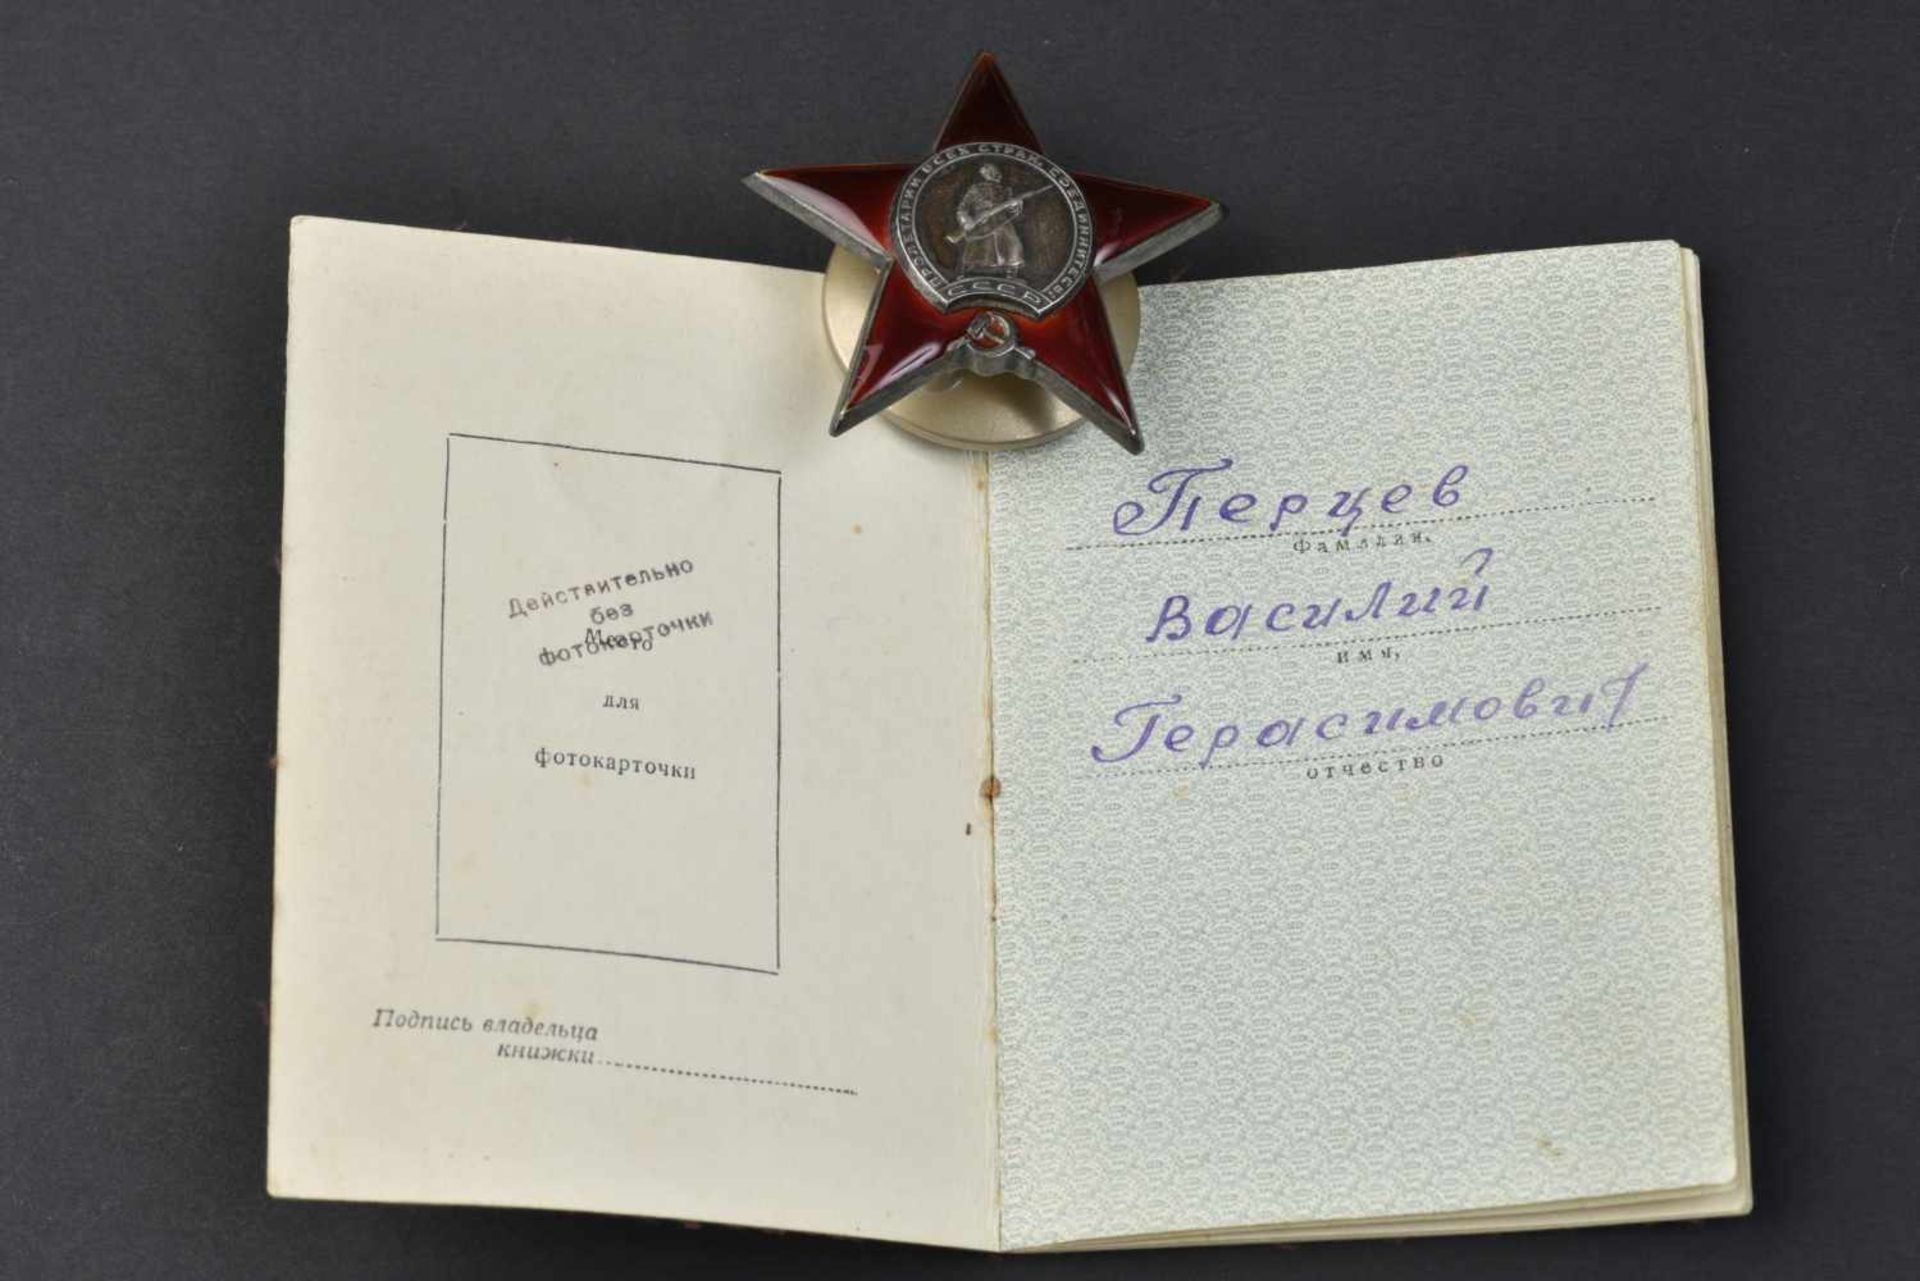 Ordre de lÉtoile Rouge n° 652466 attribuée en 1944 avec son livret d'attribution. Cette pièce